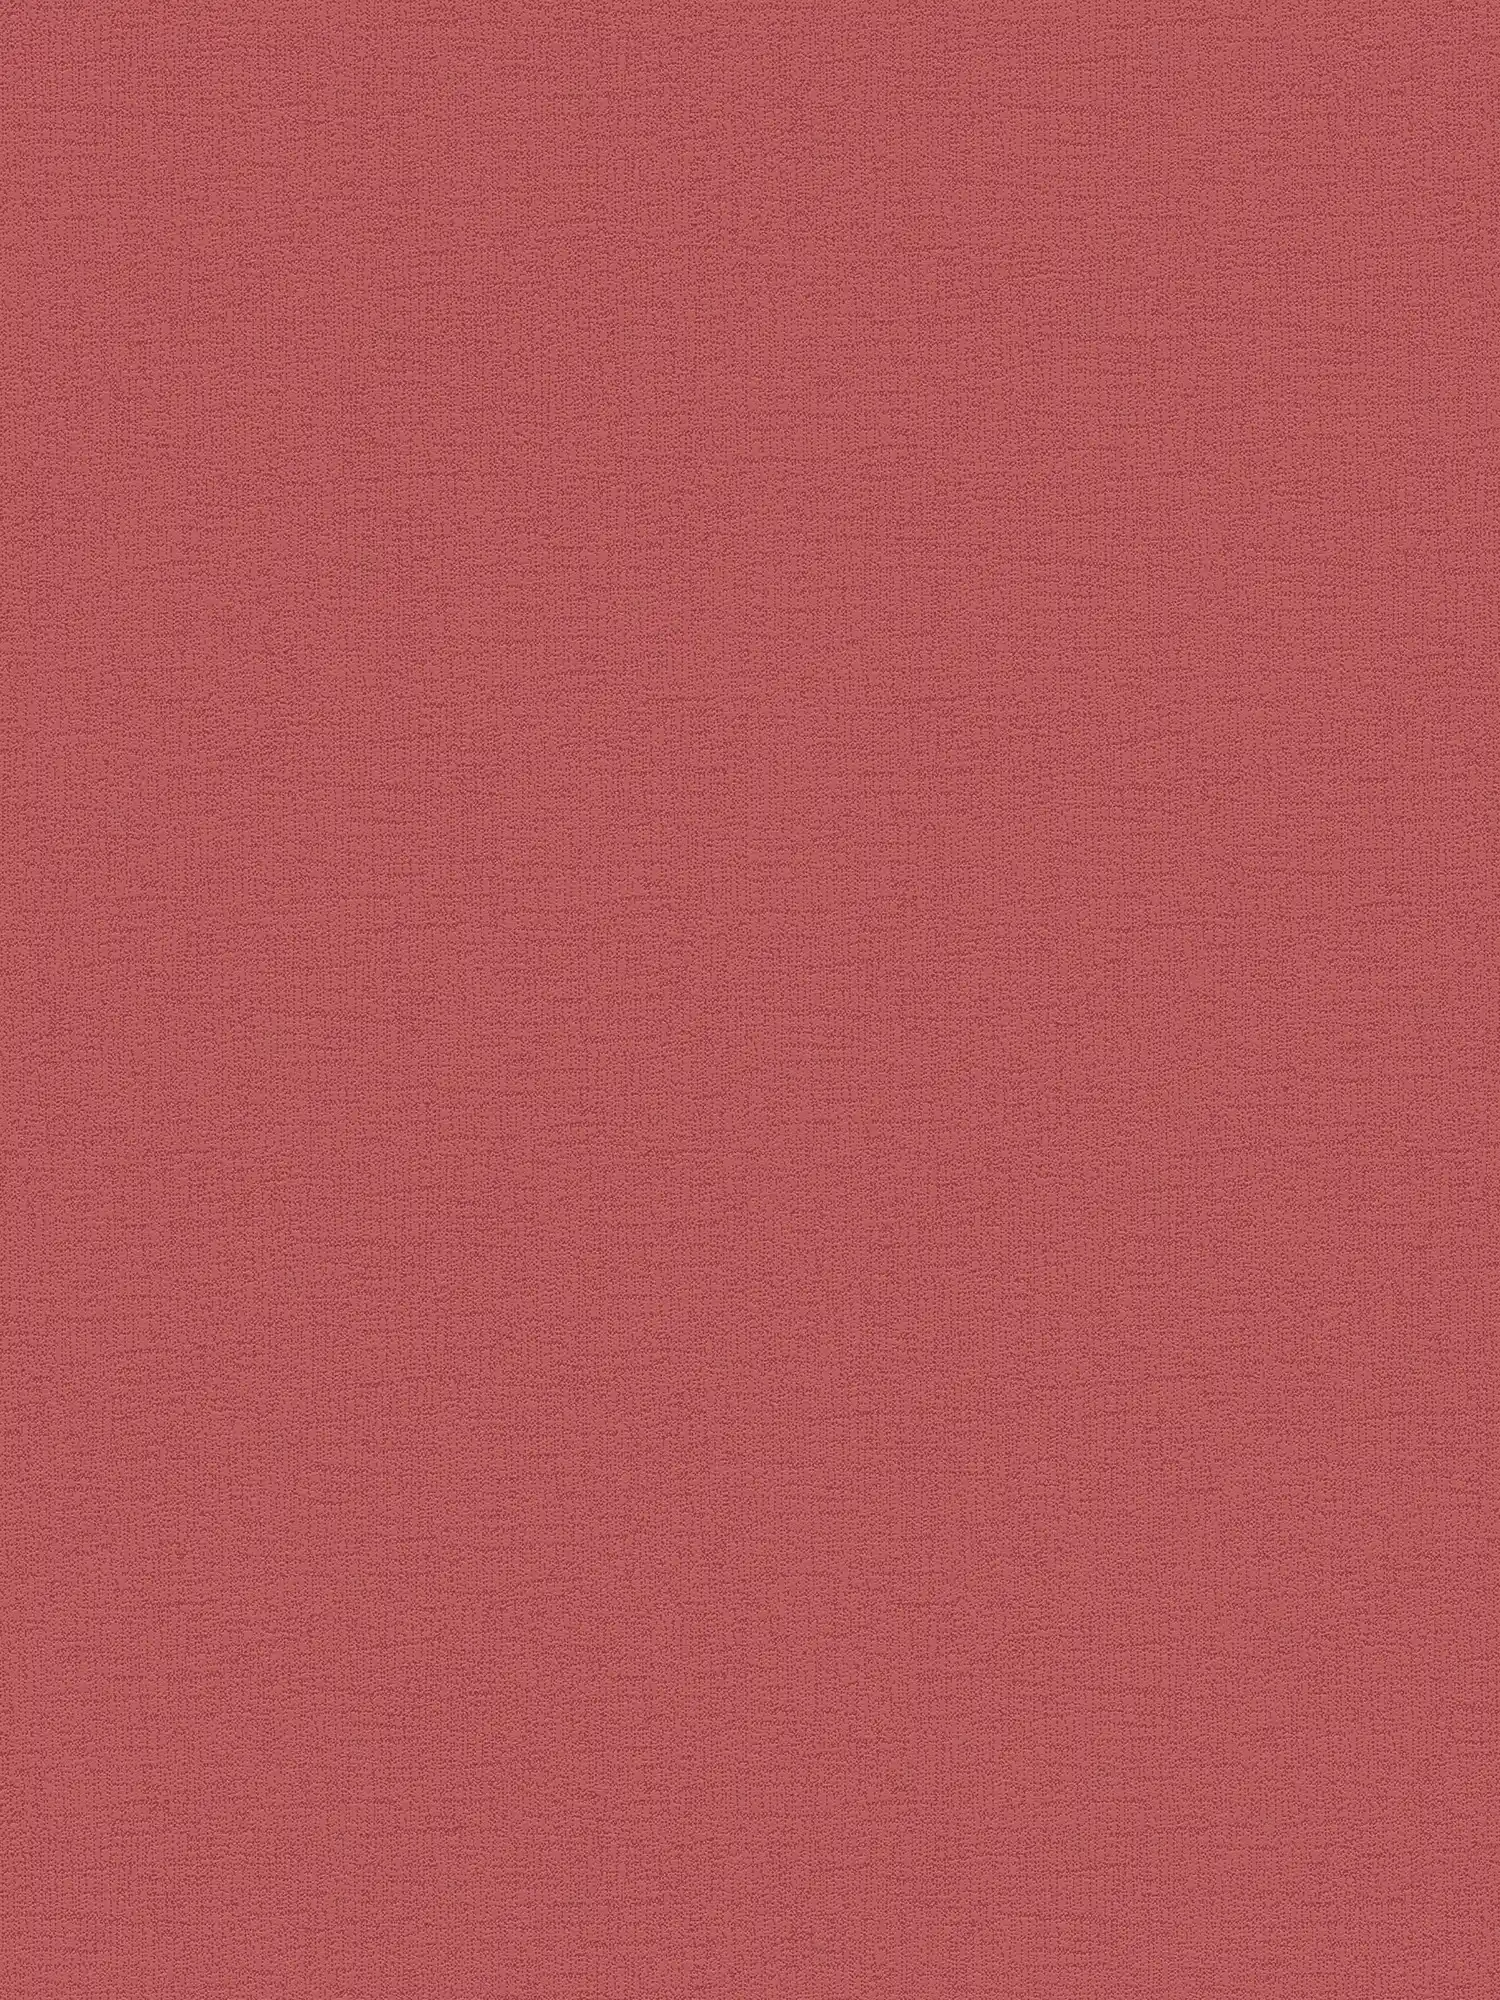 Papier peint intissé rouge intense avec motifs structurés - rouge
